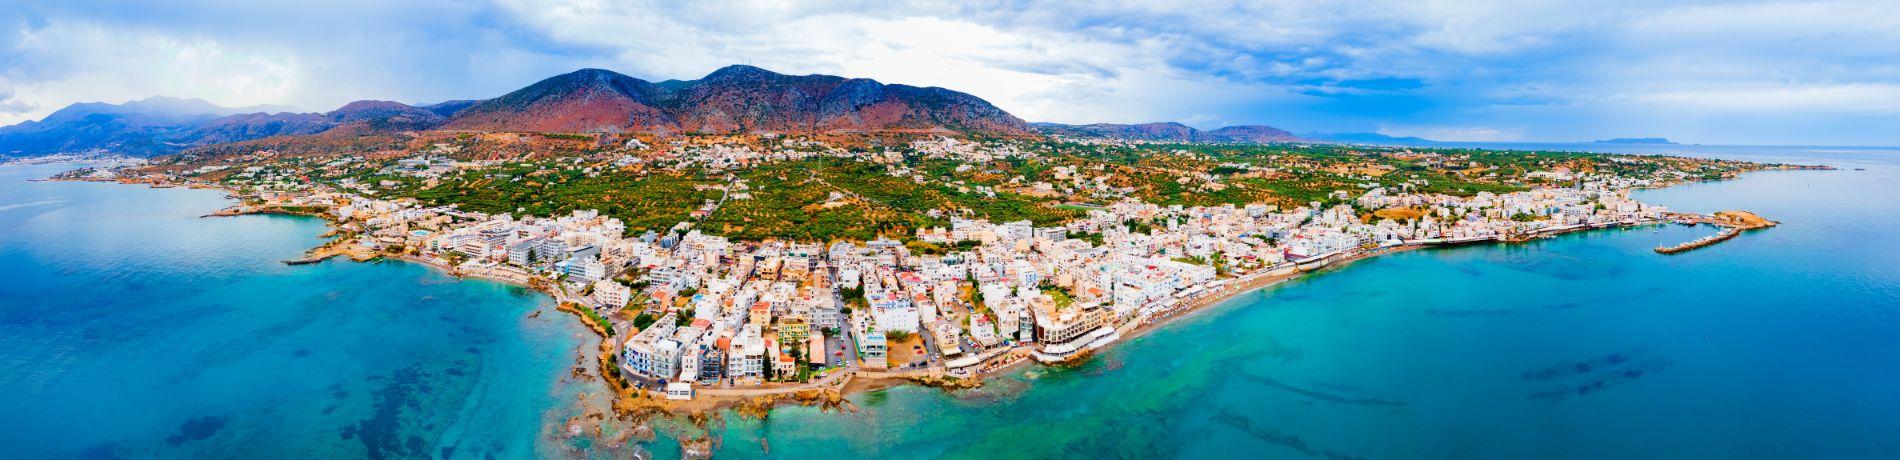 Hersonissos, Creta | Eden viaggi